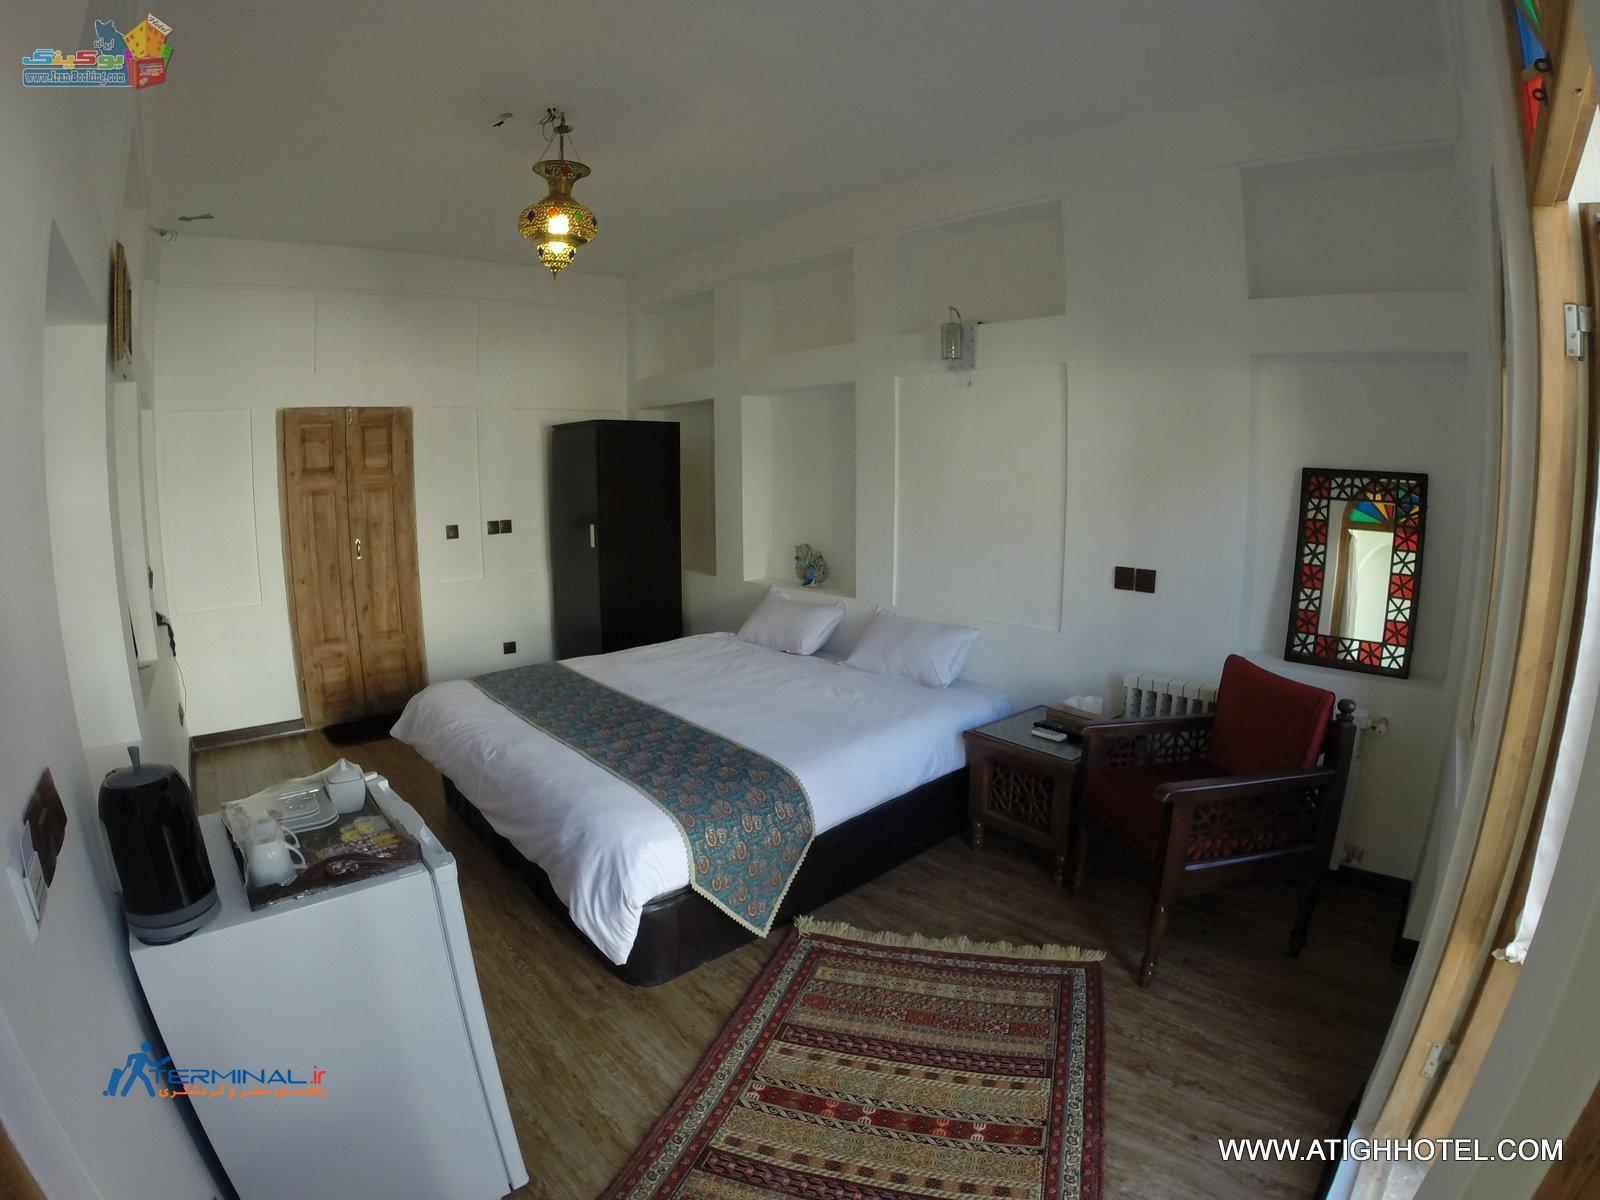 atigh-hotel-isfahan-room-duble.jpg (1600×1200)